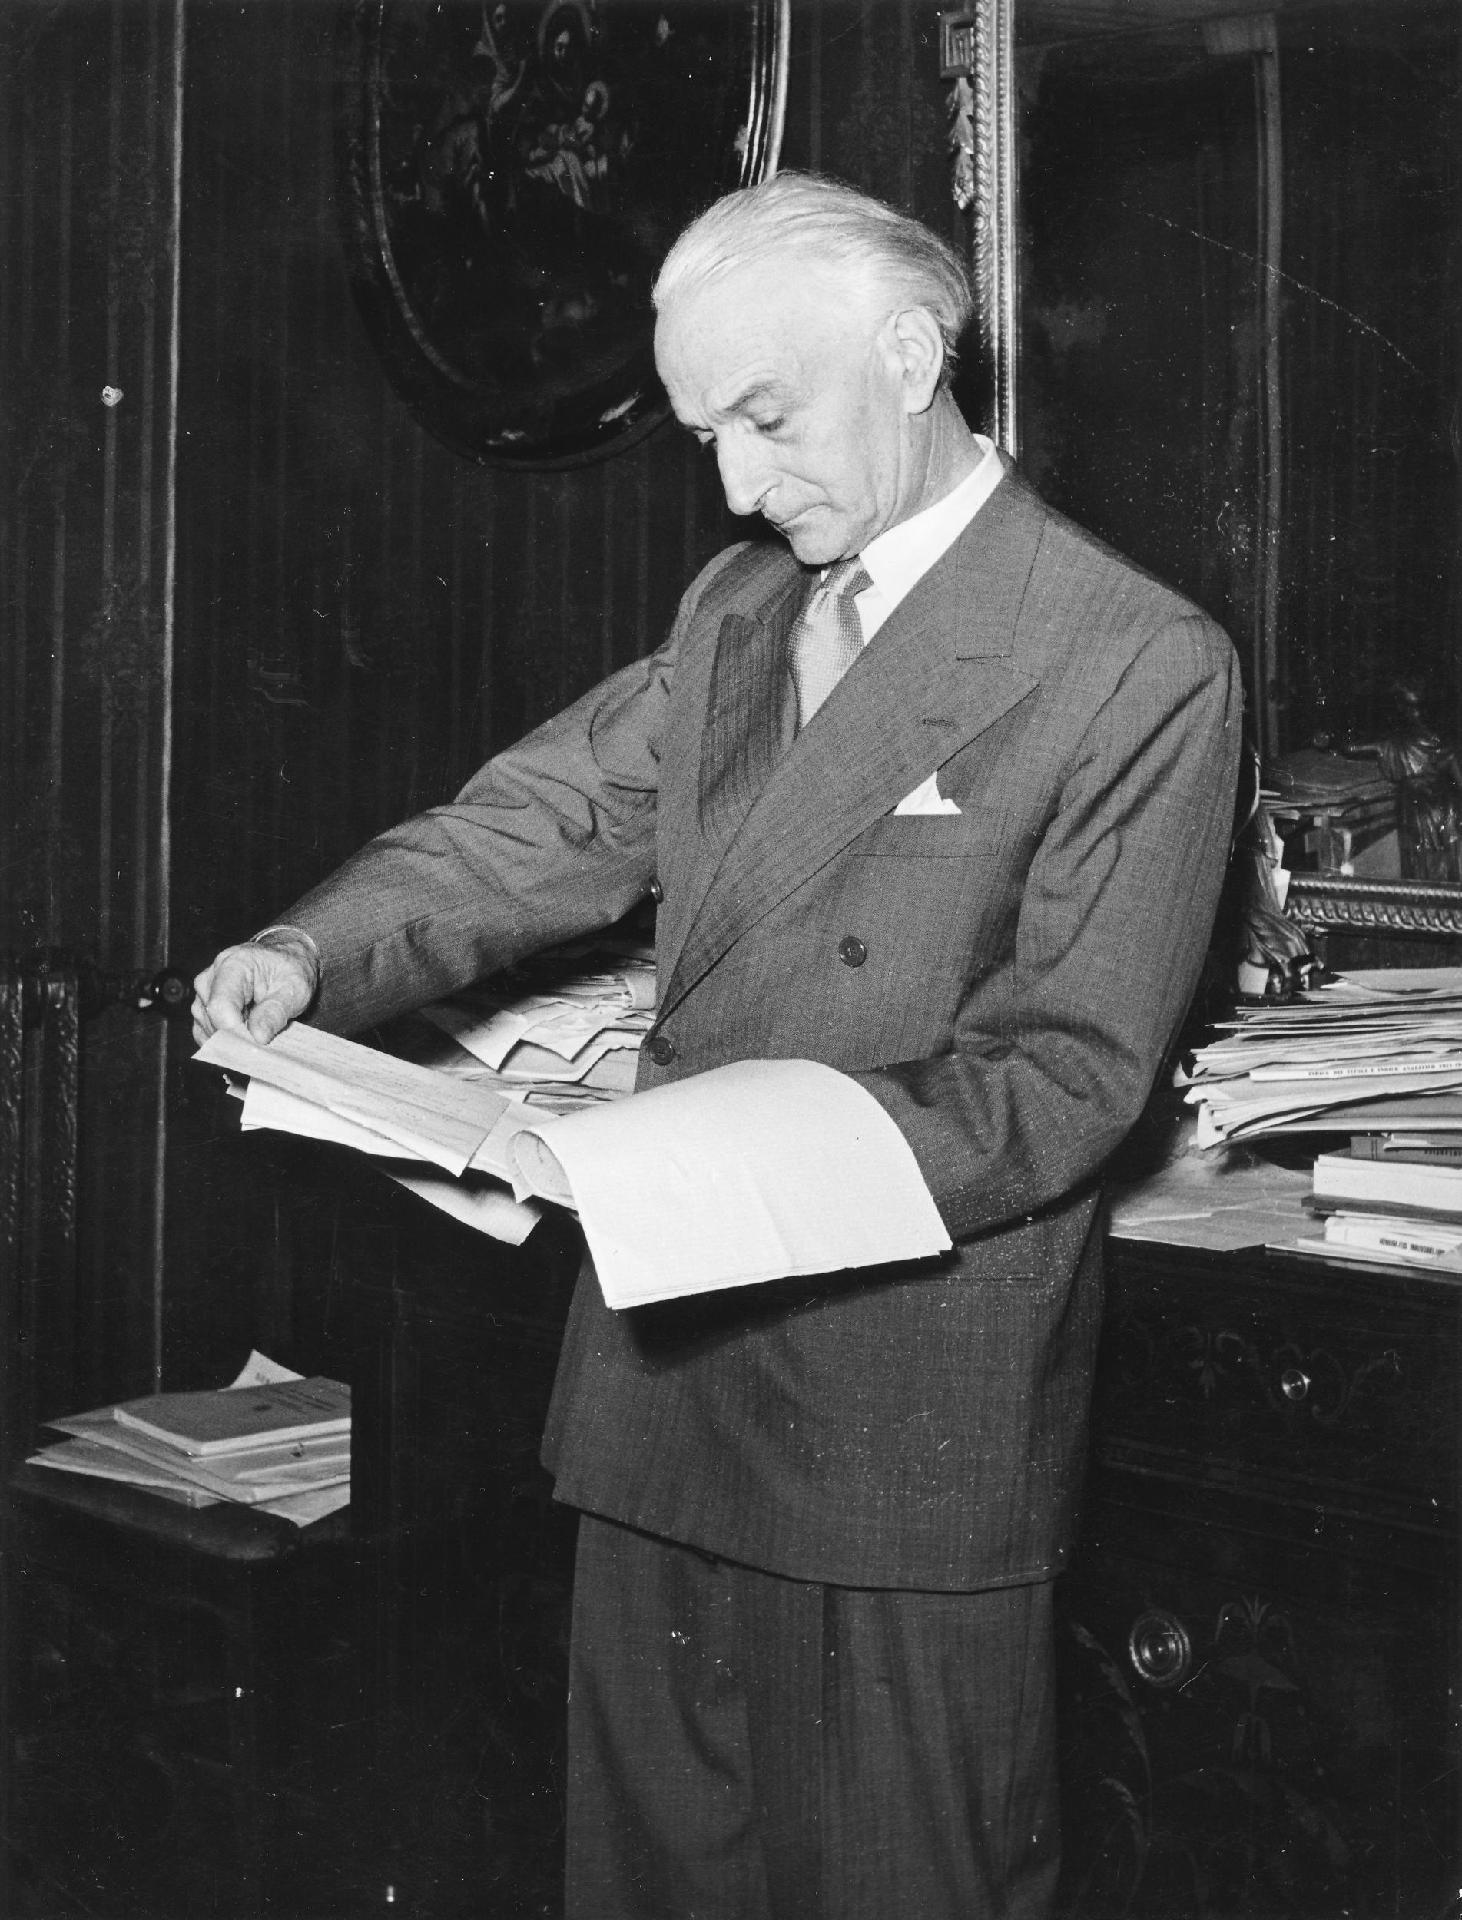 Il Presidente della Repubblica Antonio Segni nel suo studio intento a leggere dei documenti